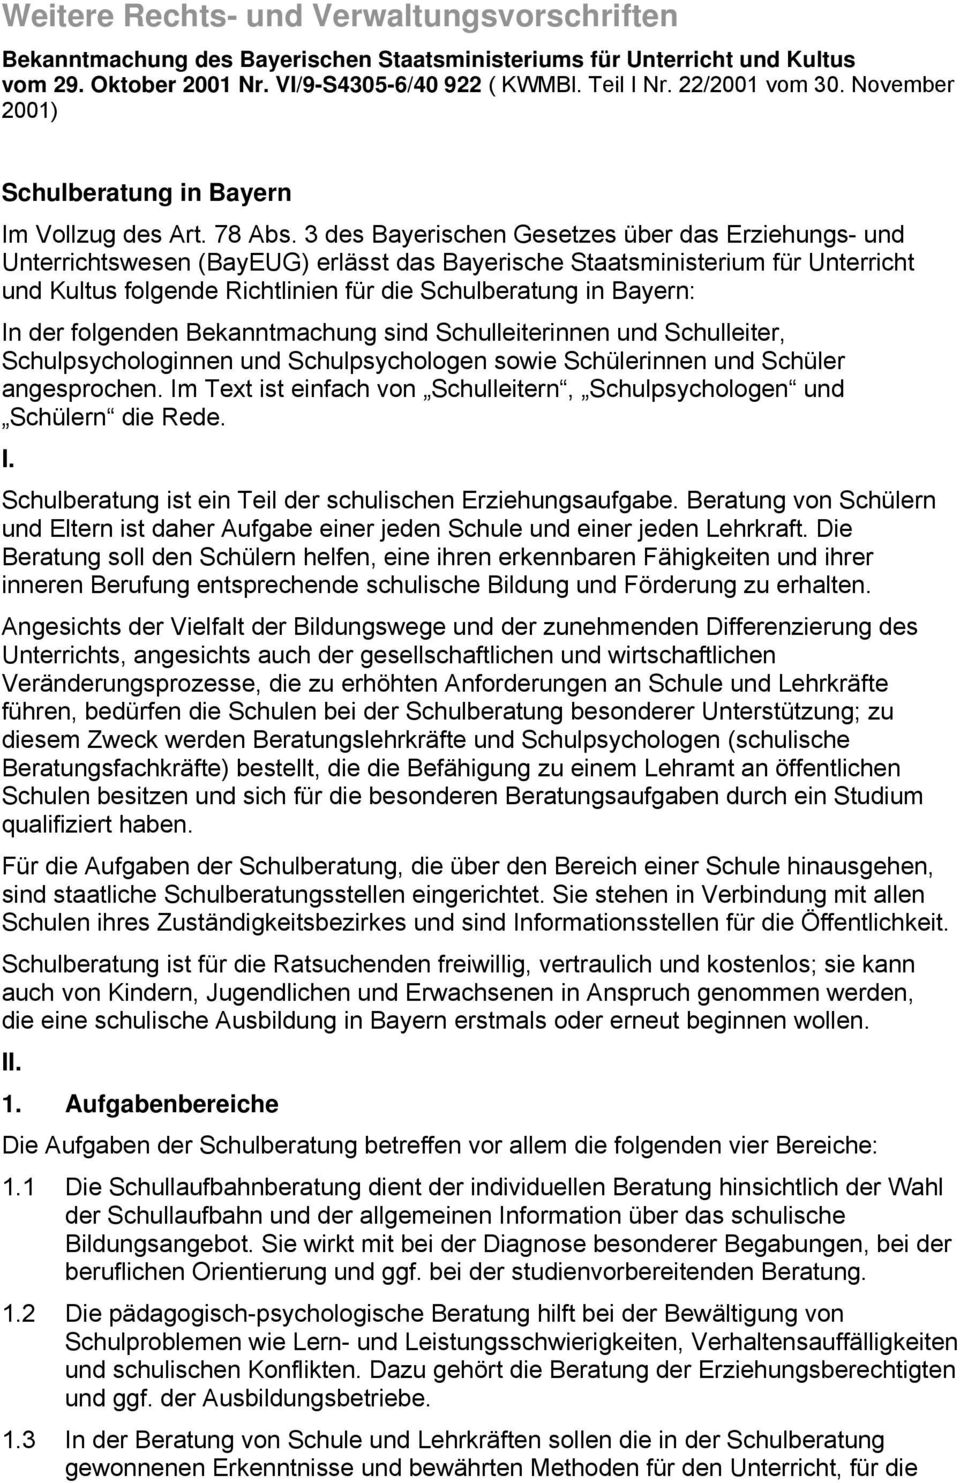 3 des Bayerischen Gesetzes über das Erziehungs- und Unterrichtswesen (BayEUG) erlässt das Bayerische Staatsministerium für Unterricht und Kultus folgende Richtlinien für die Schulberatung in Bayern: